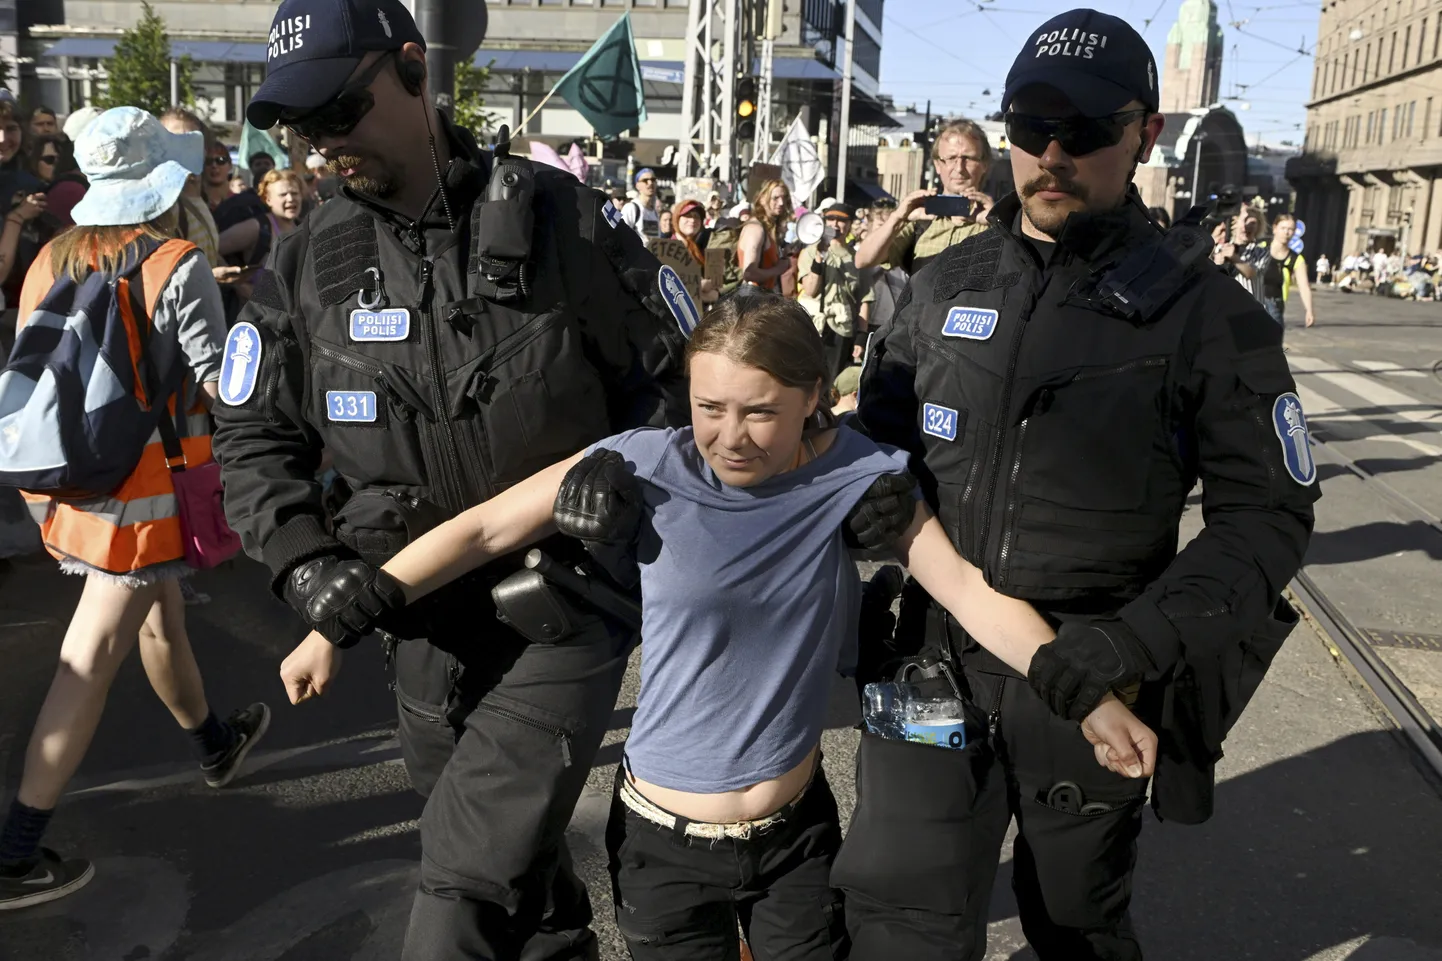 Helsingi politsei Greta Thunbergi meeleavalduselt minema toimetamas.